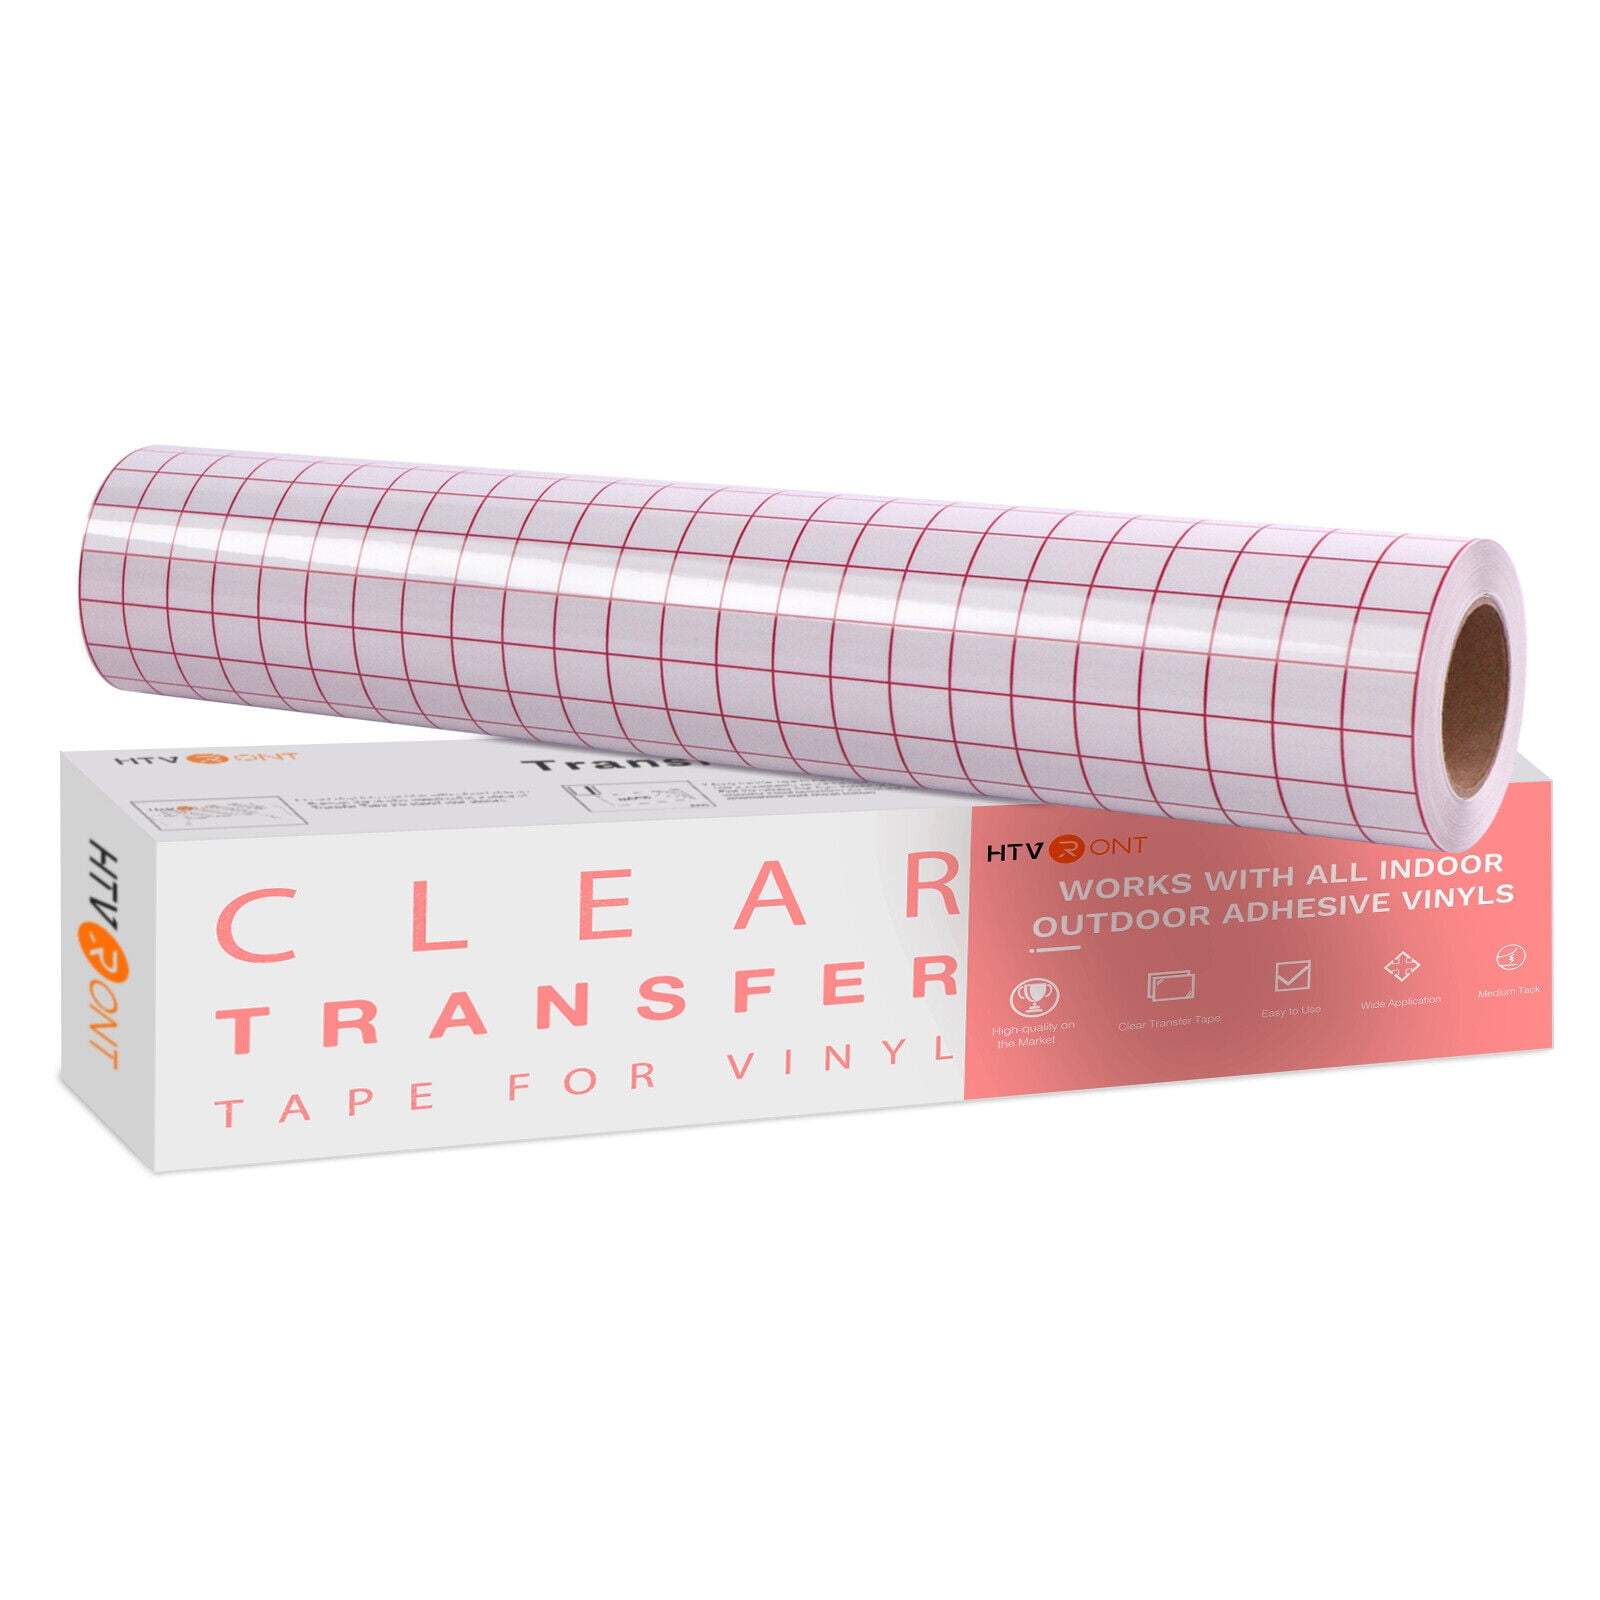 Lya Vinyl 40ft Transfer Tape for Vinyl - Clear Vinyl Transfer Paper Tape Roll 12 x 40 ft with 1/2 Red Grid Standard Tape for Cricut Adhesive Vinyl for